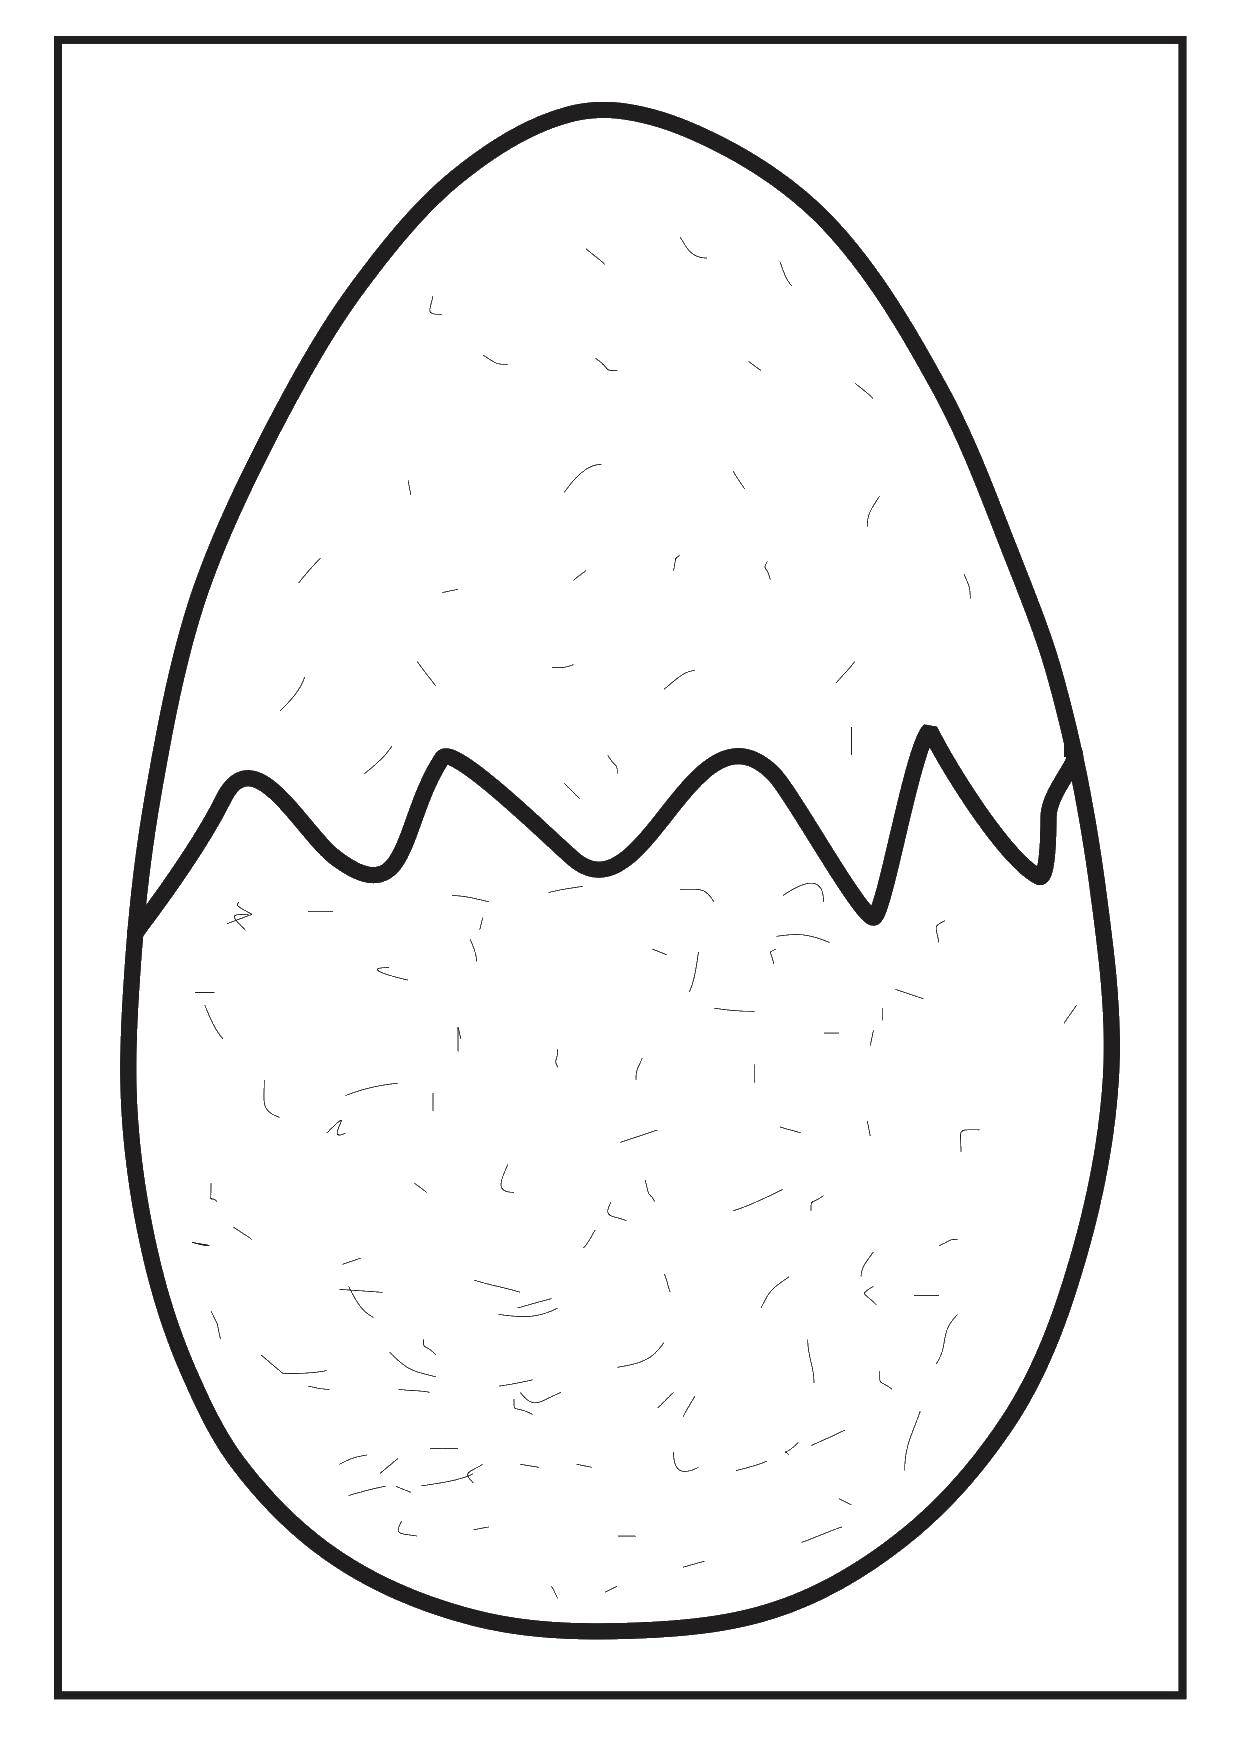 Название: Раскраска Яйцо. Категория: Узоры для раскрашивания яиц. Теги: яйцо, узоры, трафарет.